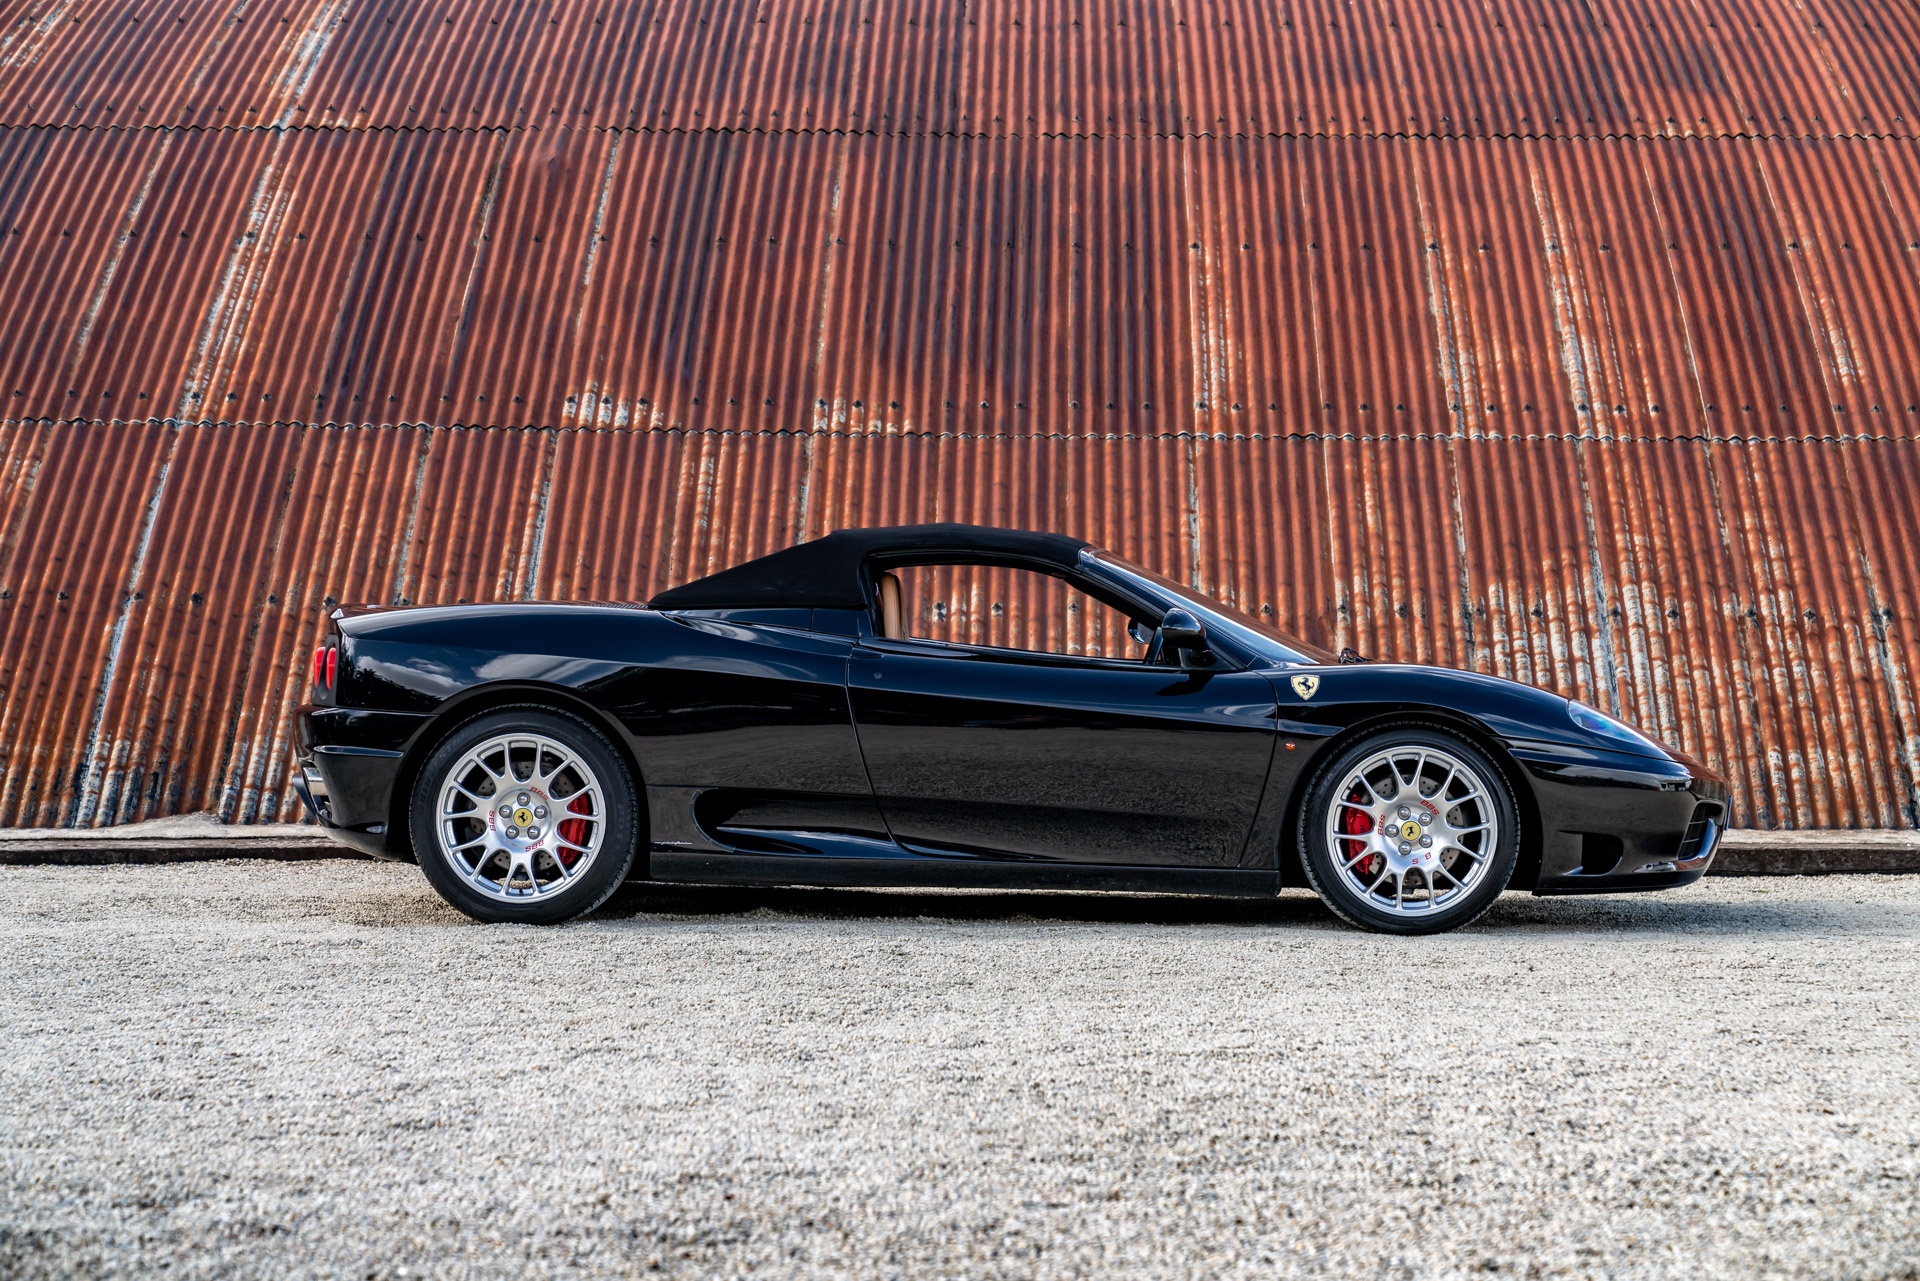 Chi tiết siêu xe Ferrari 360 Spider của David Beckham - ảnh 9